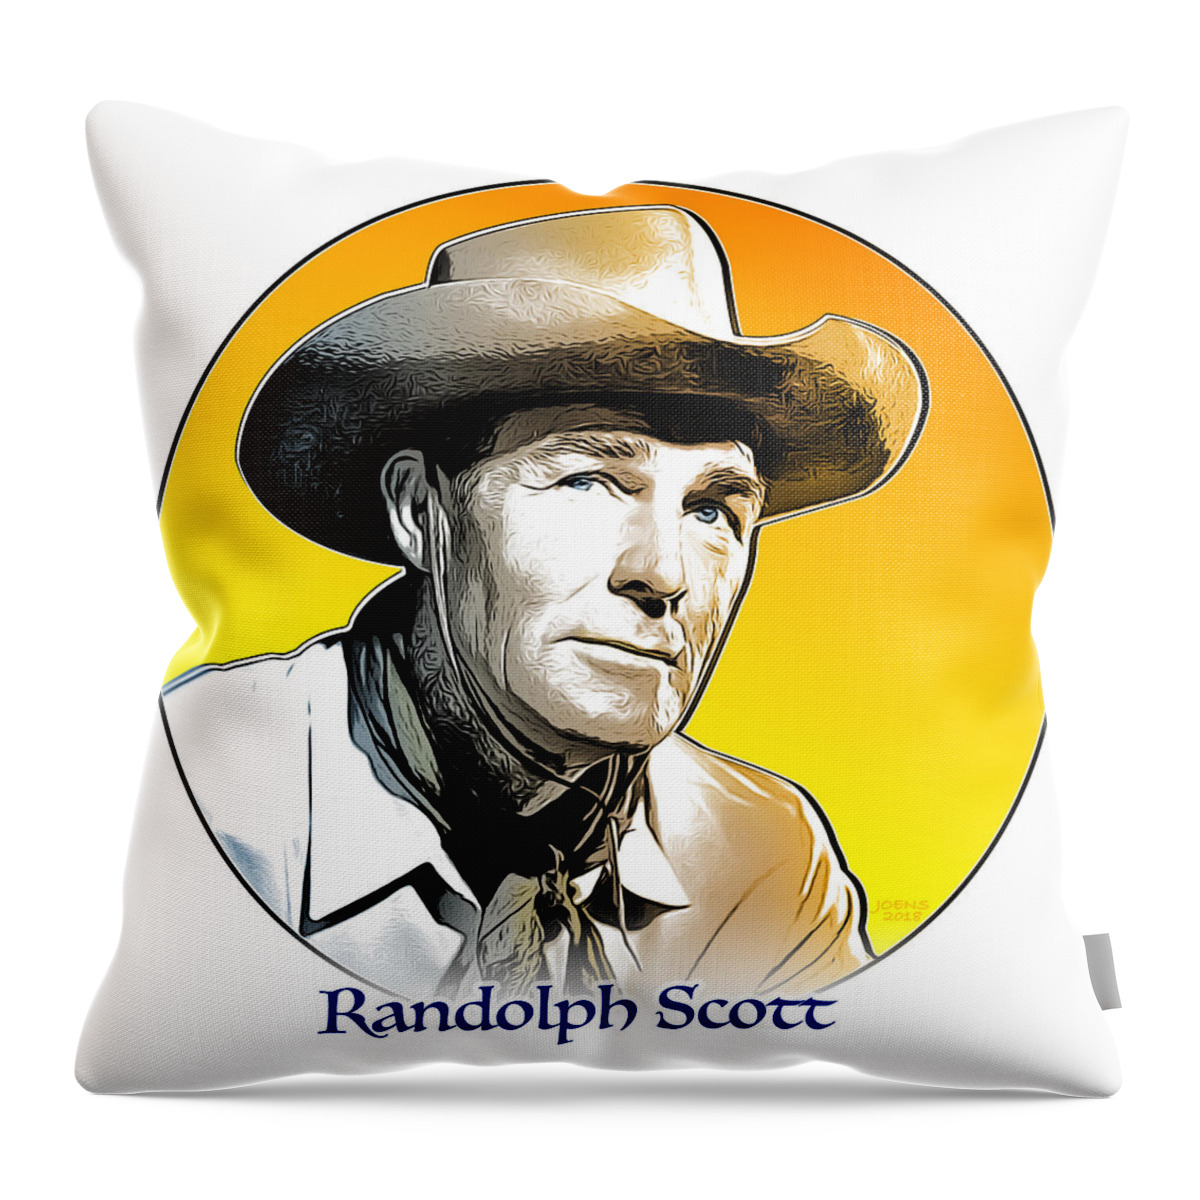 Randolph Scott Throw Pillow featuring the digital art Randolph Scott #3 by Greg Joens